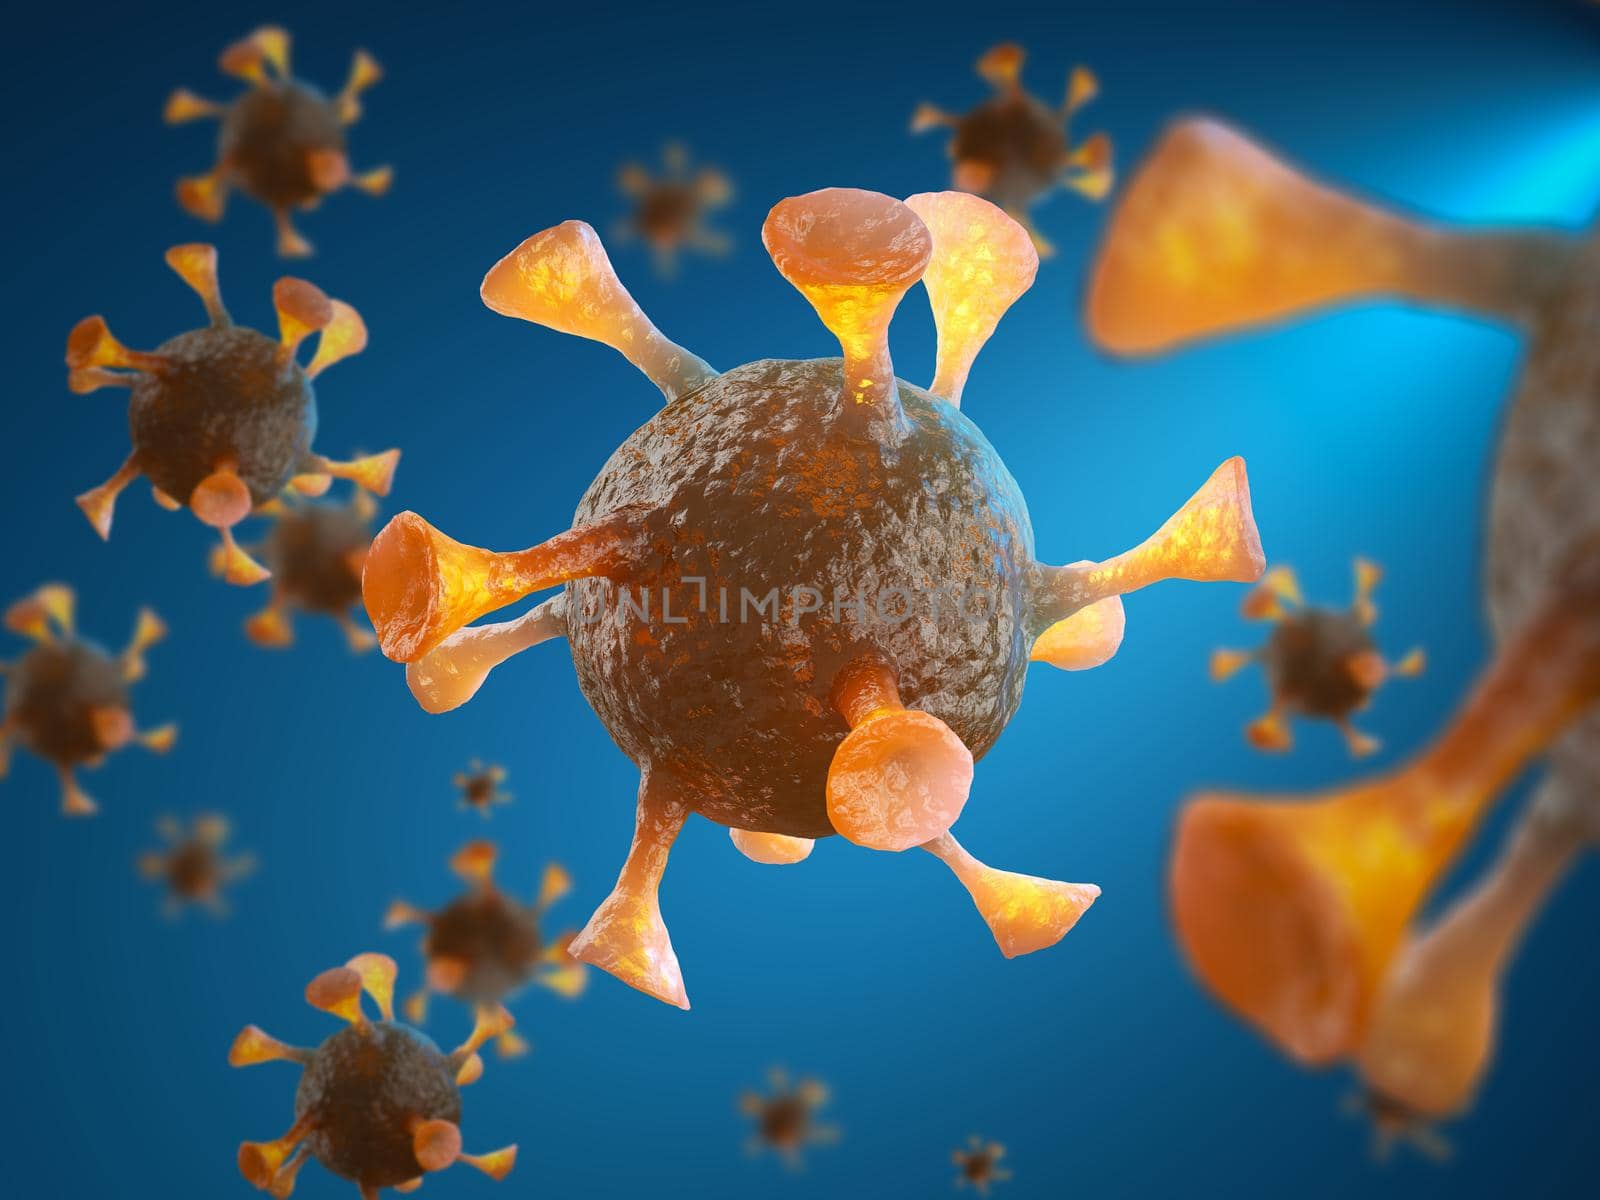 Viruses close-up on a blue background. 3d render.